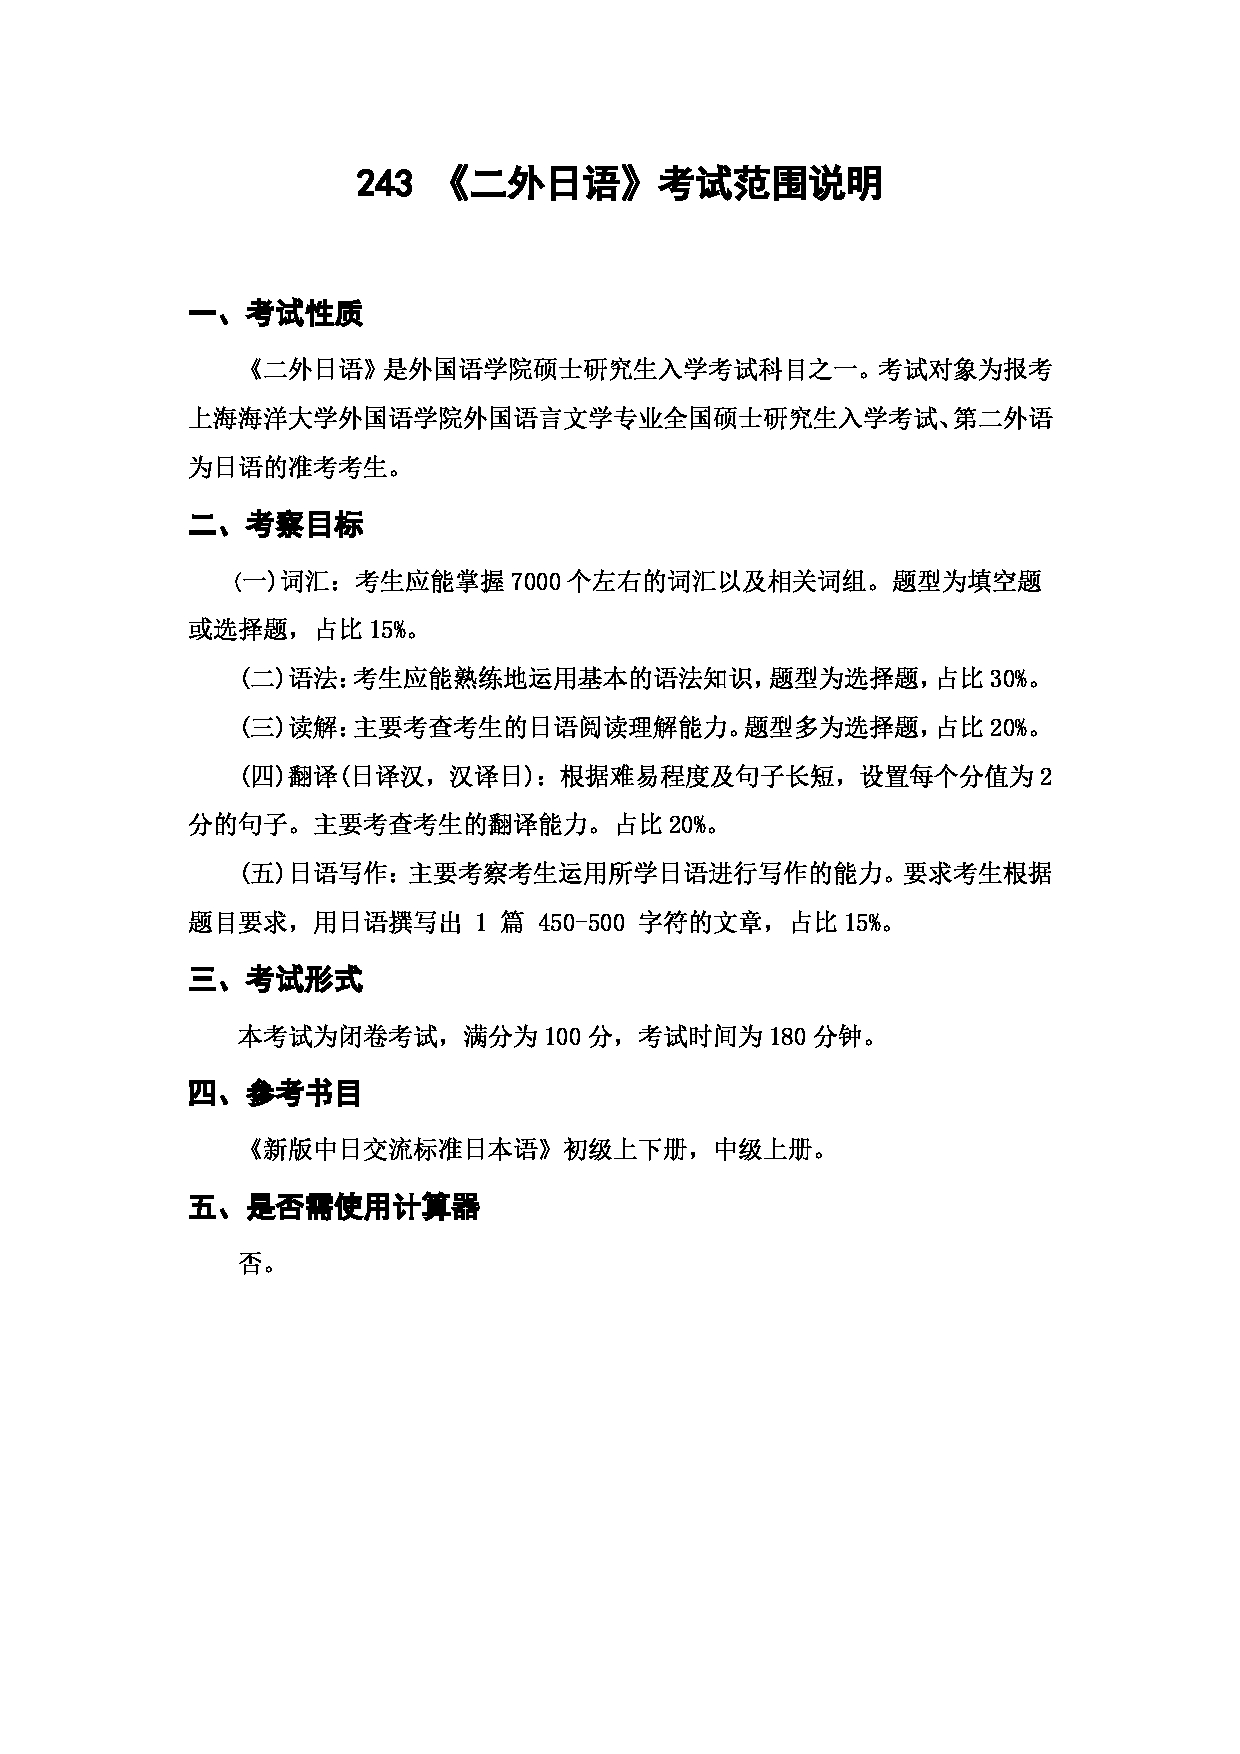 上海海洋大学2023年考研自命题科目 243《二外日语》 考试范围第1页